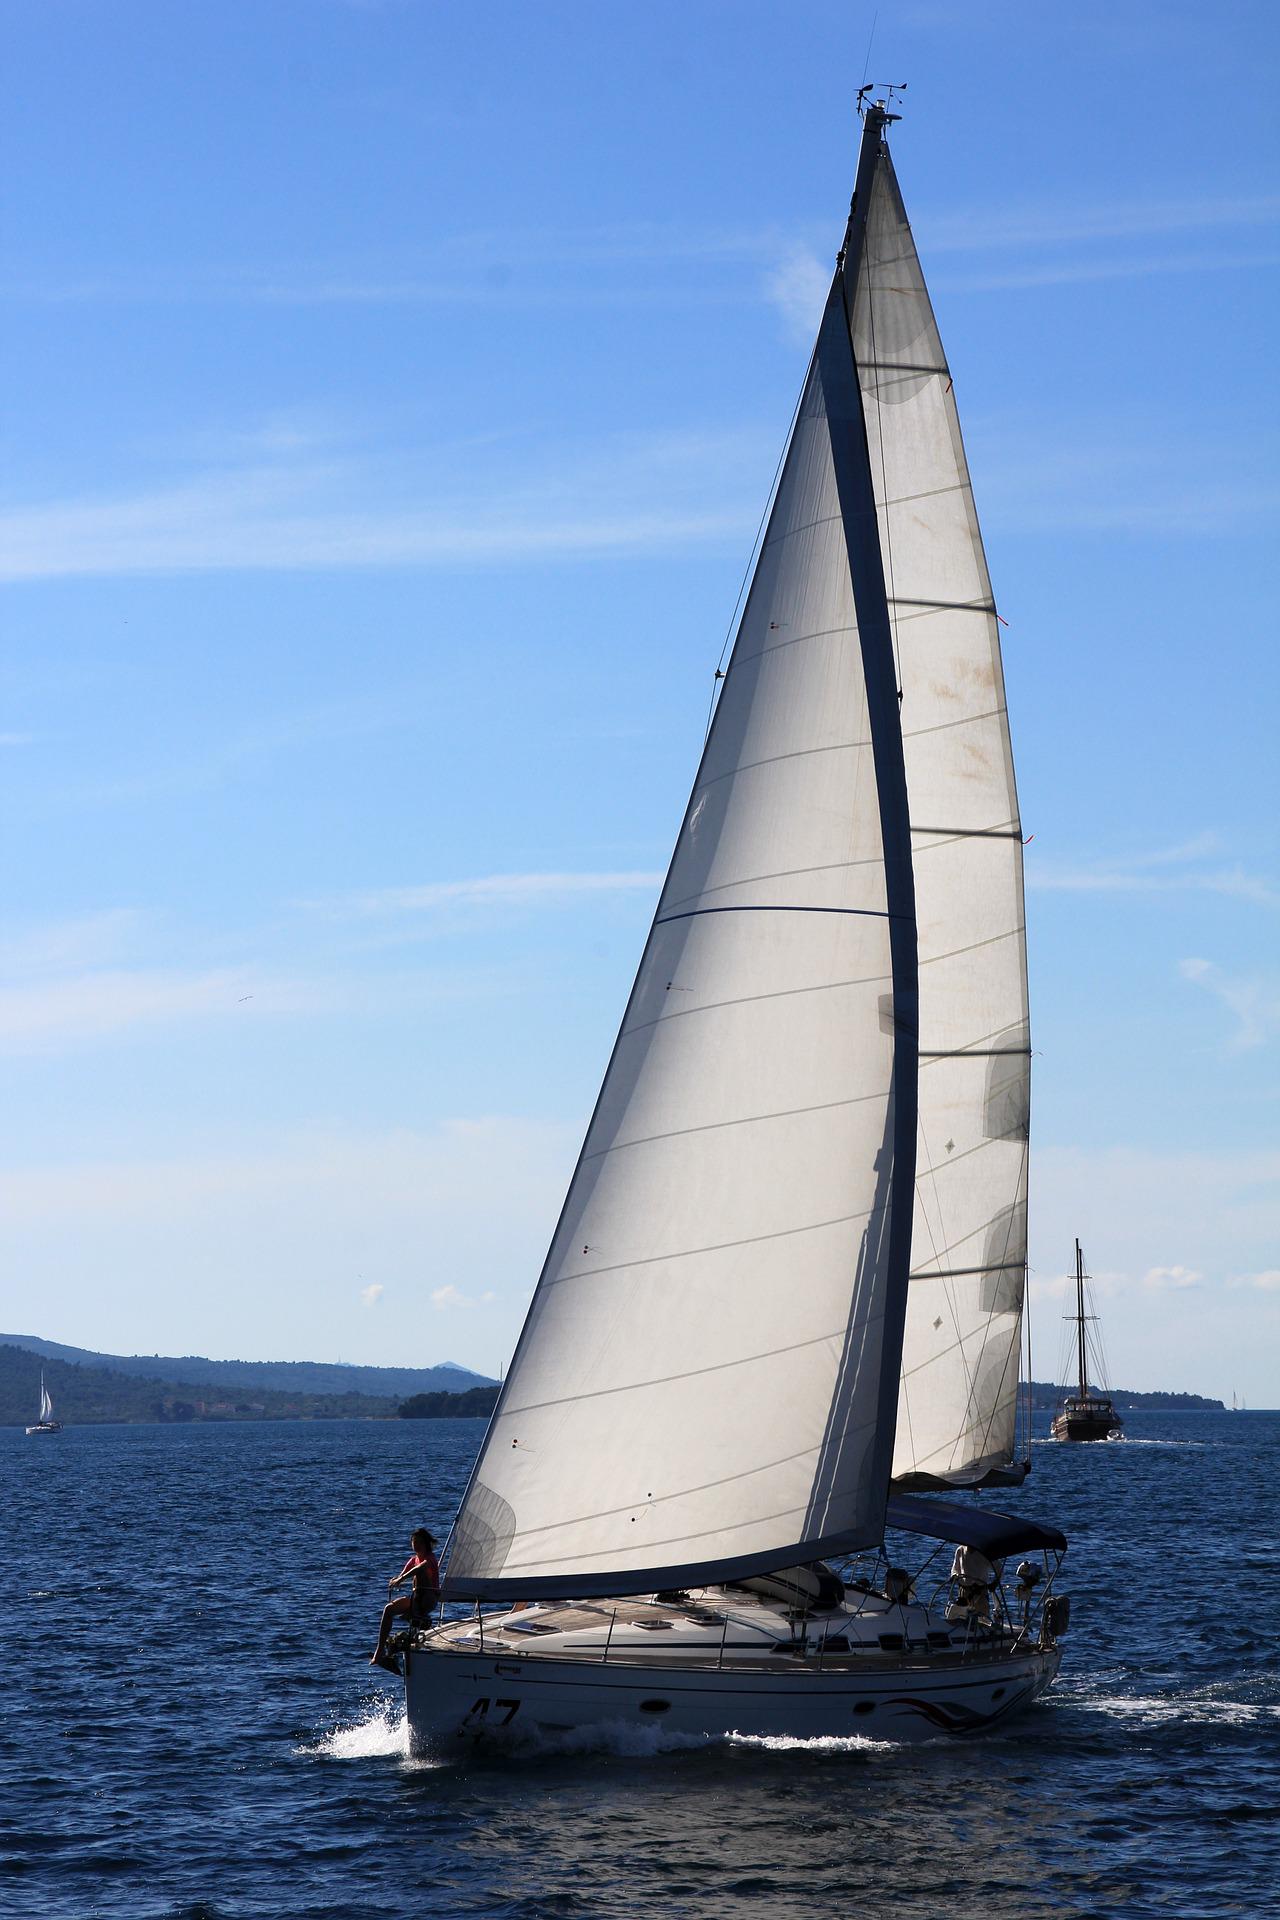 Patent żeglarskie: Jak zostać żeglarzem?